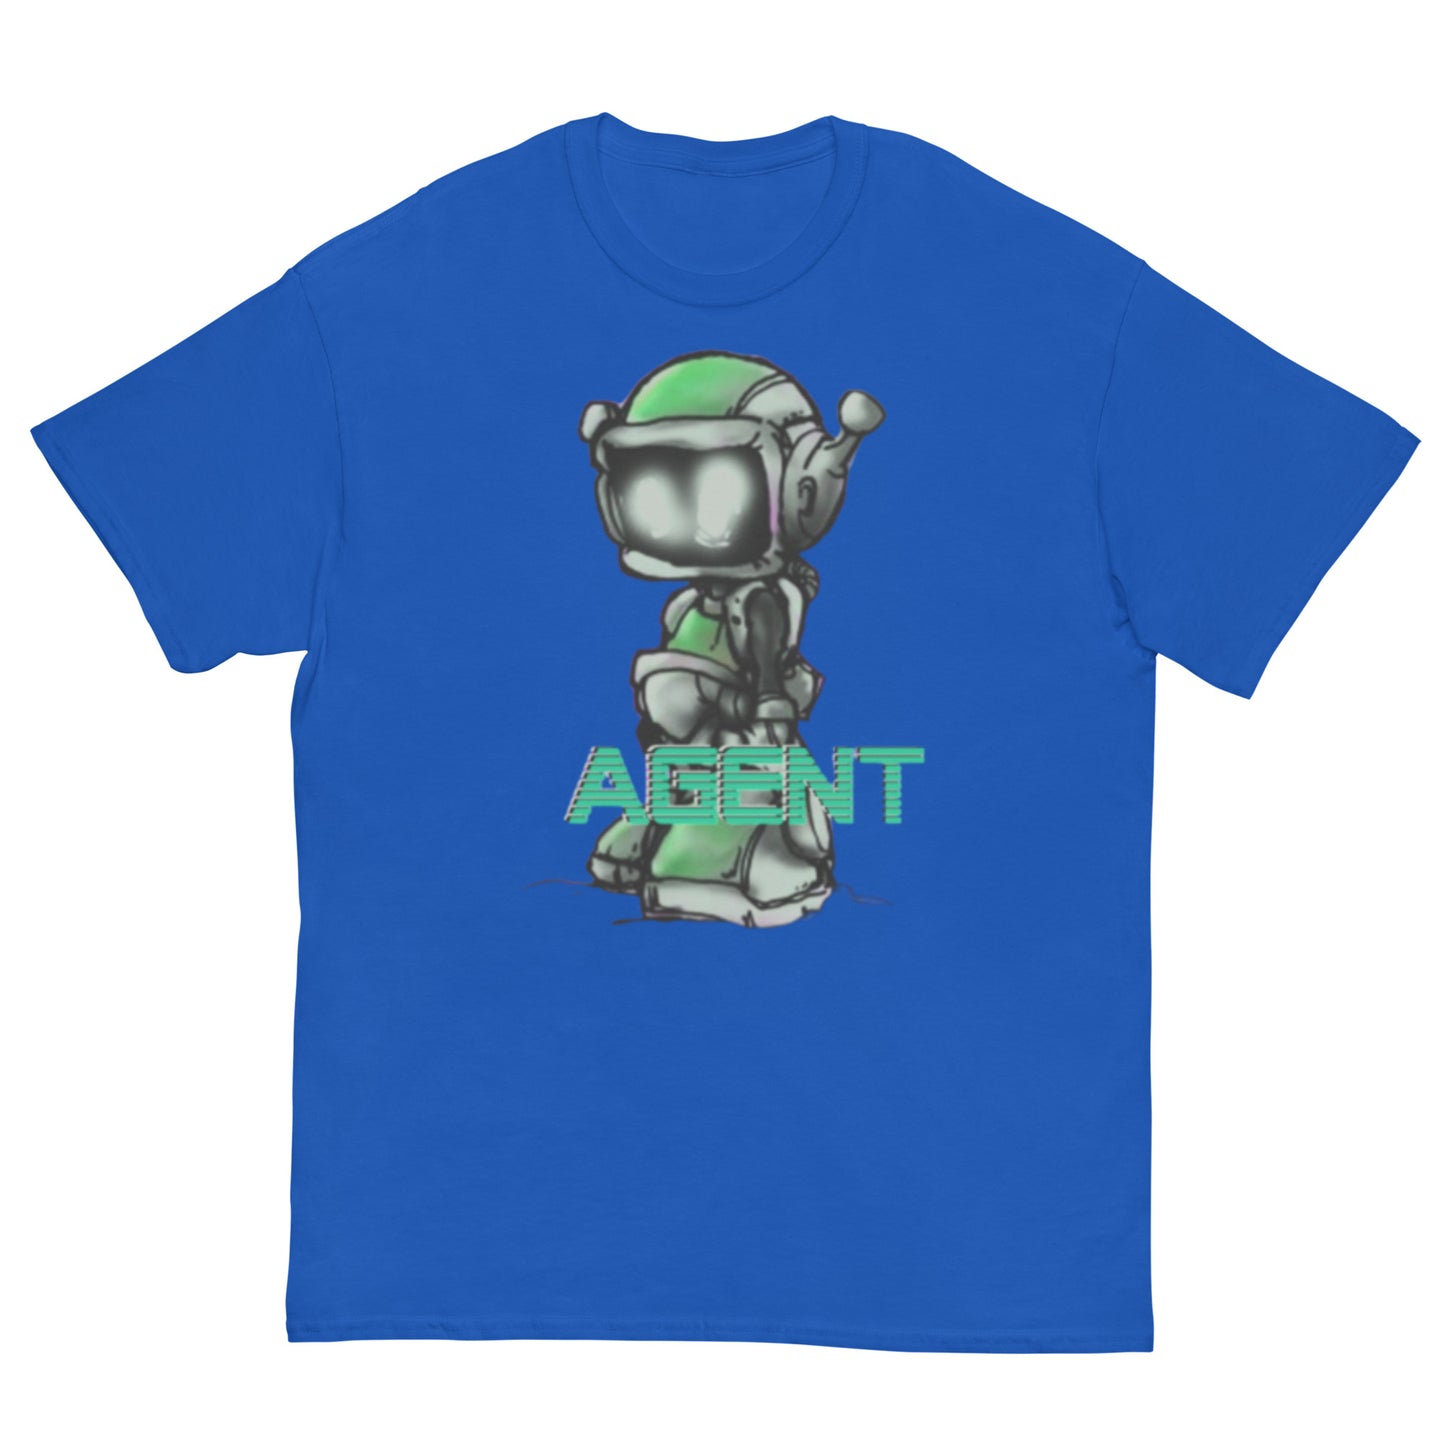 Agent Green Robot T-Shirt -Basic Tee